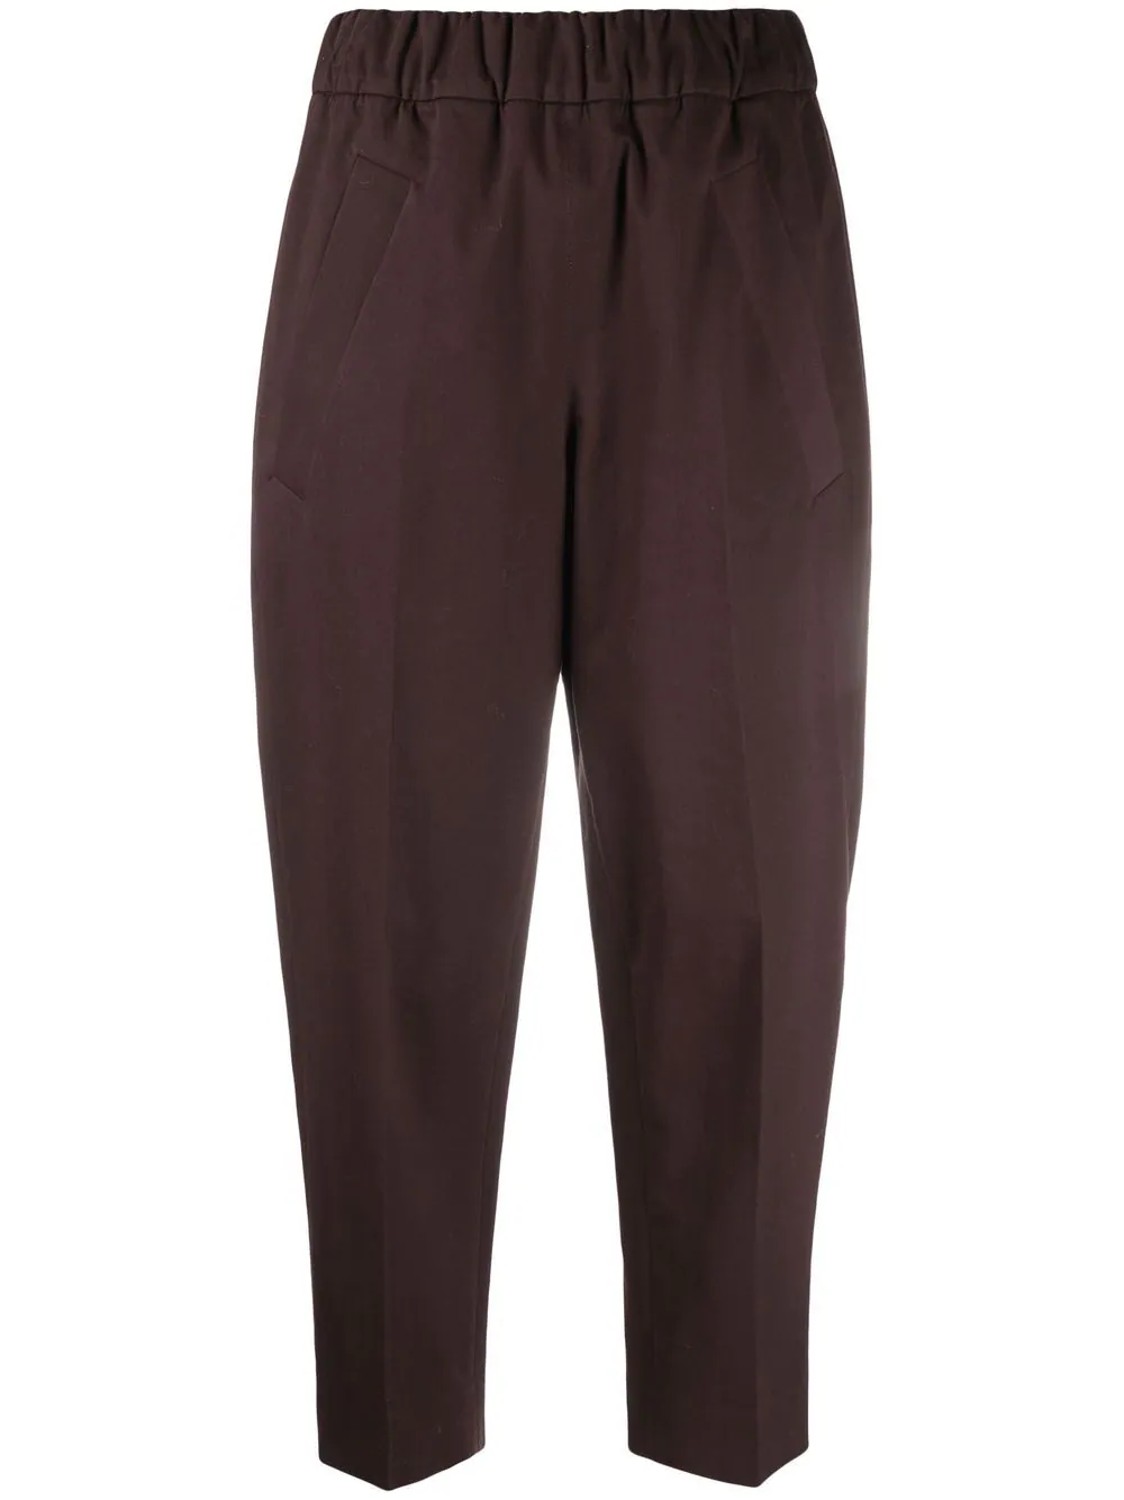 shop Tela  Pantaloni: Pantaloni Tela, in gabardina, elastico in vita, tasche laterali, marrone scuro, stretti infondo, lunghezza alla caviglia.

Composizione: 100% cotone. number 2220